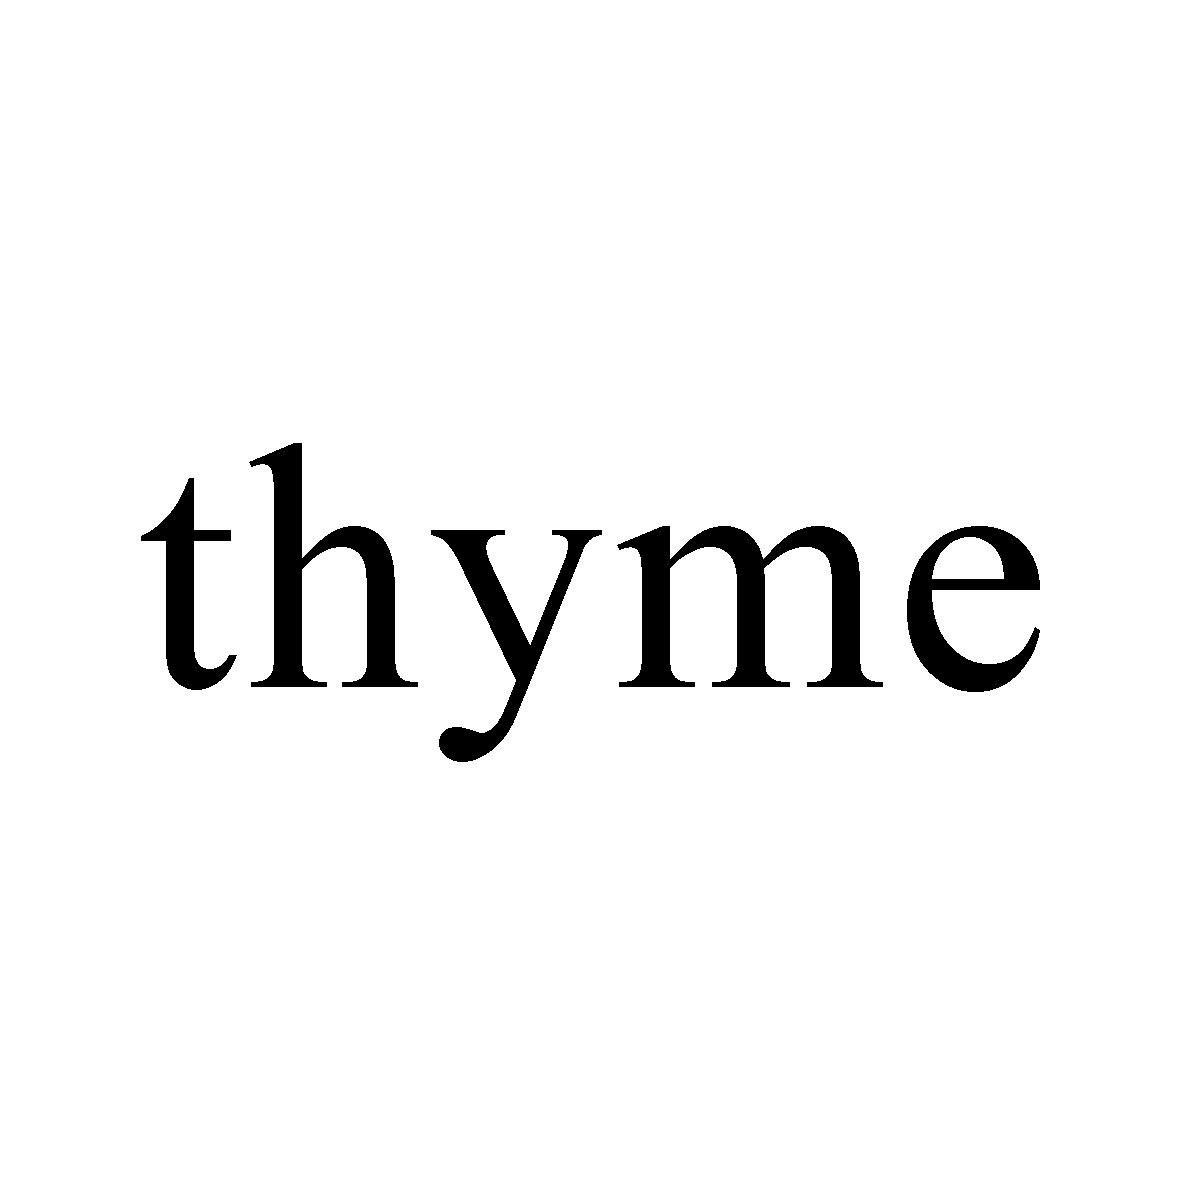  em>thyme /em>